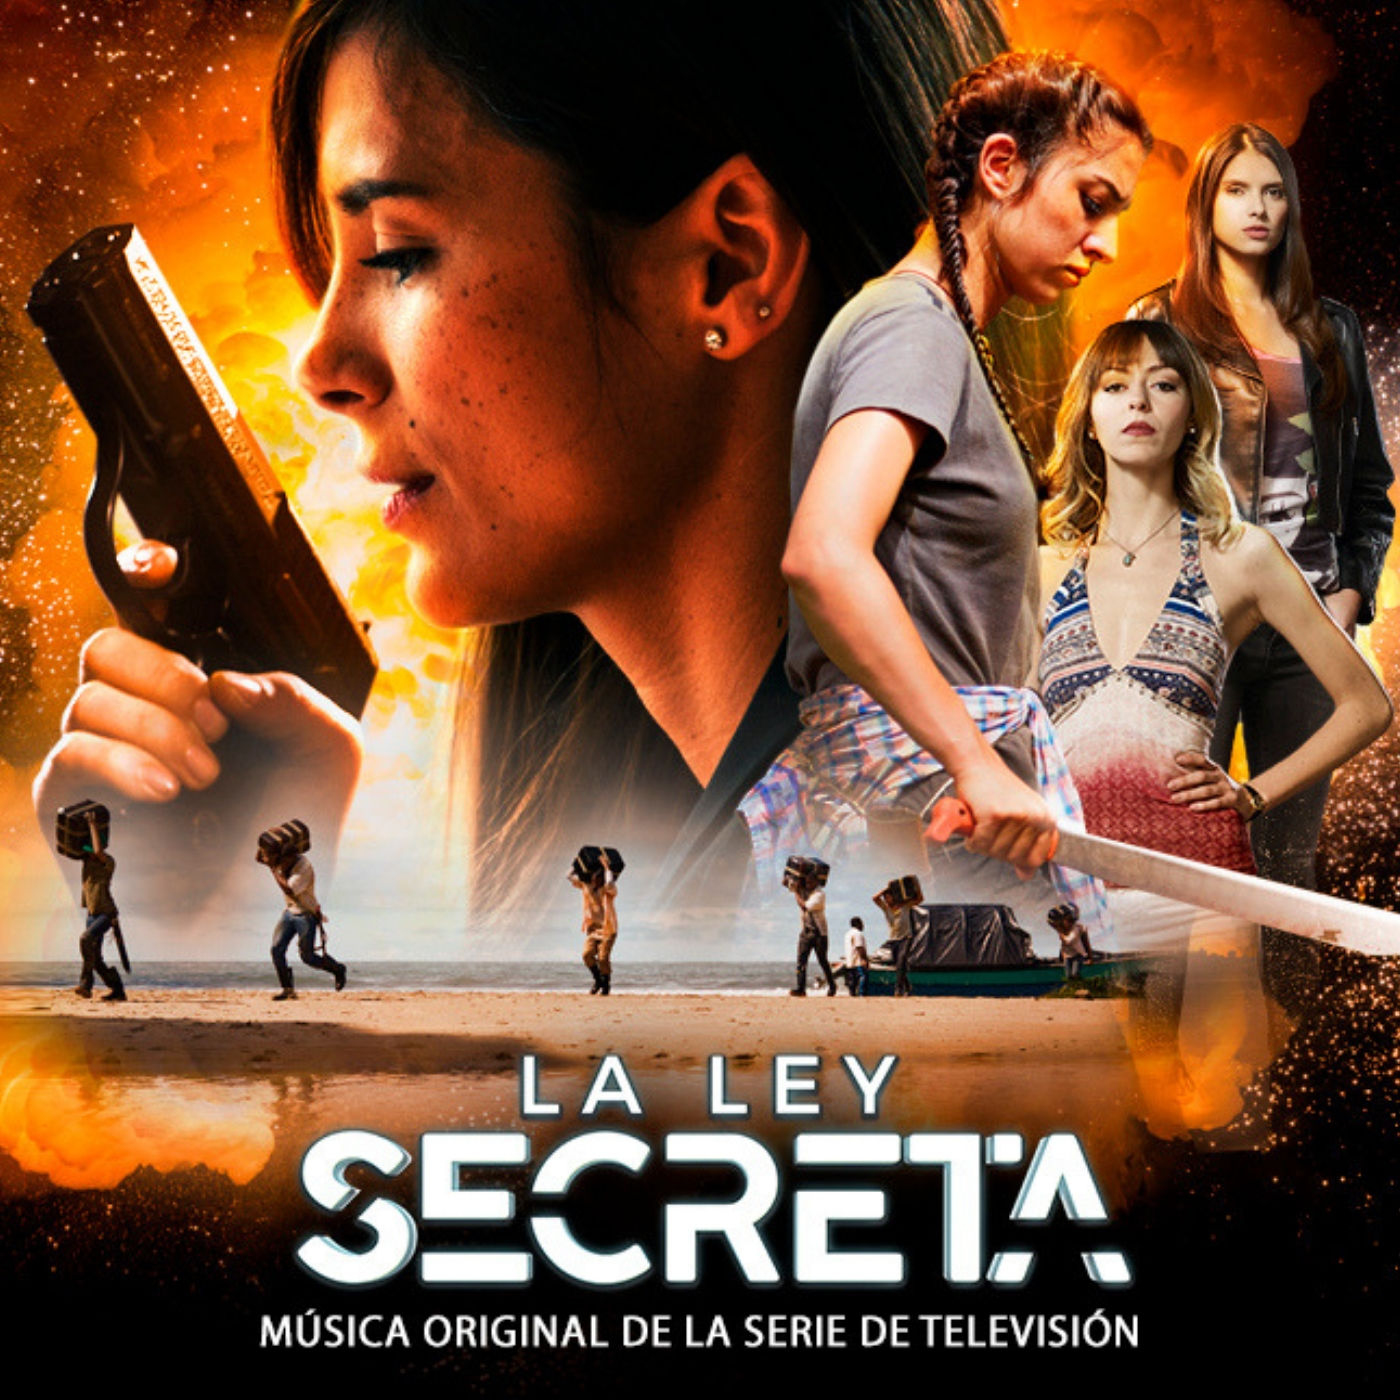 La Ley Secreta Música Original de la Serie de Televisión.